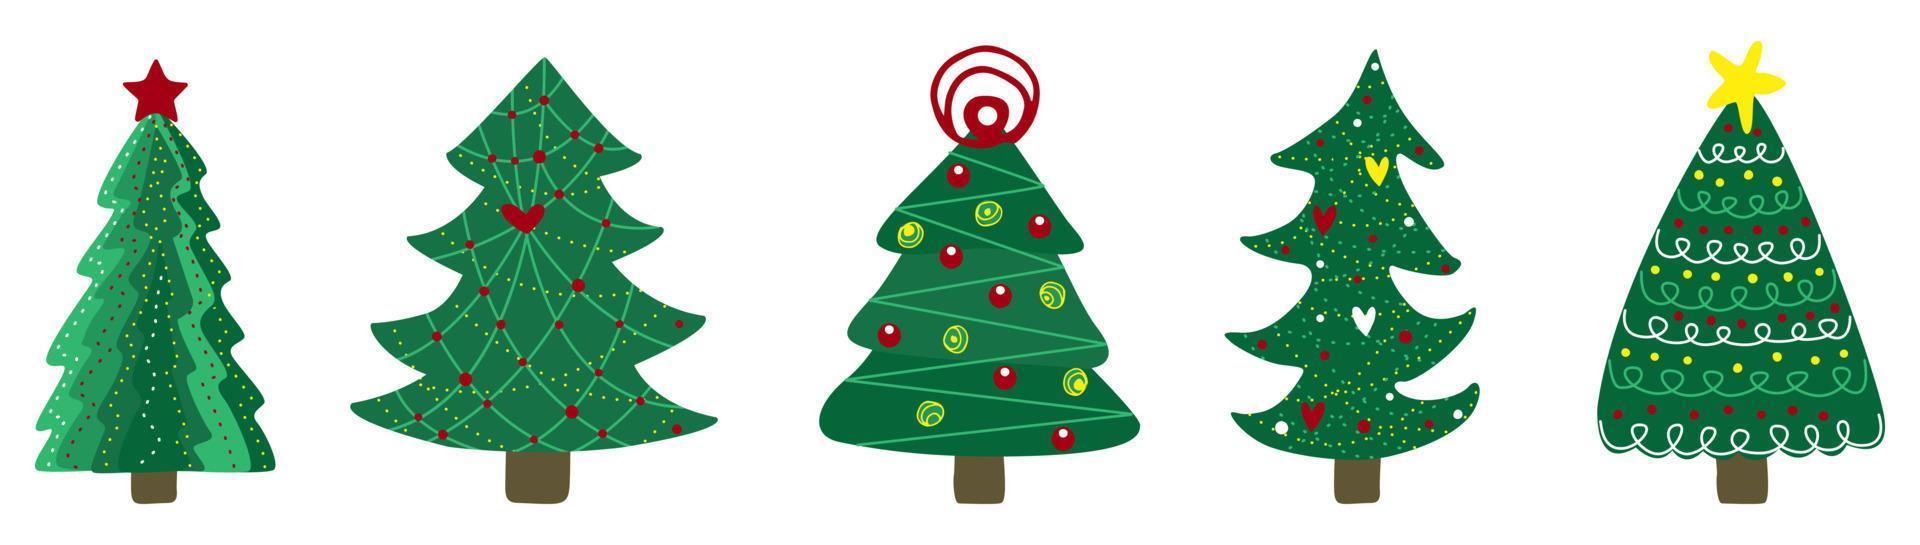 julgran. symbol för det nya året. uppsättning av gran och tallar vektor illustration isolerade.